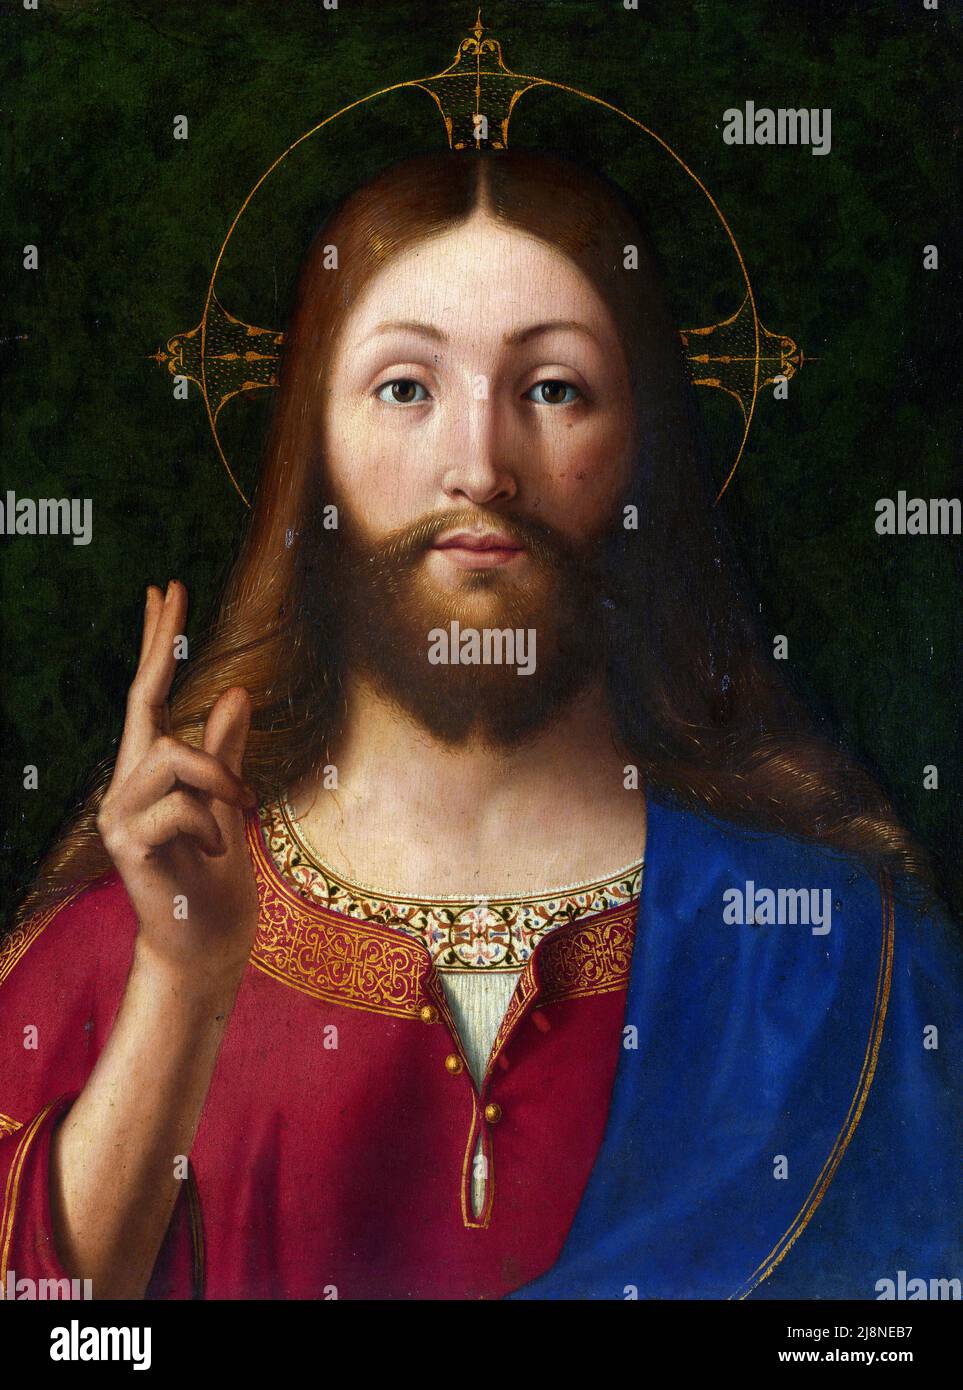 Cristo Benedizione dell'artista rinascimentale italiano, Andrea Previtali, olio di pioppo, c. 1512-15 Foto Stock